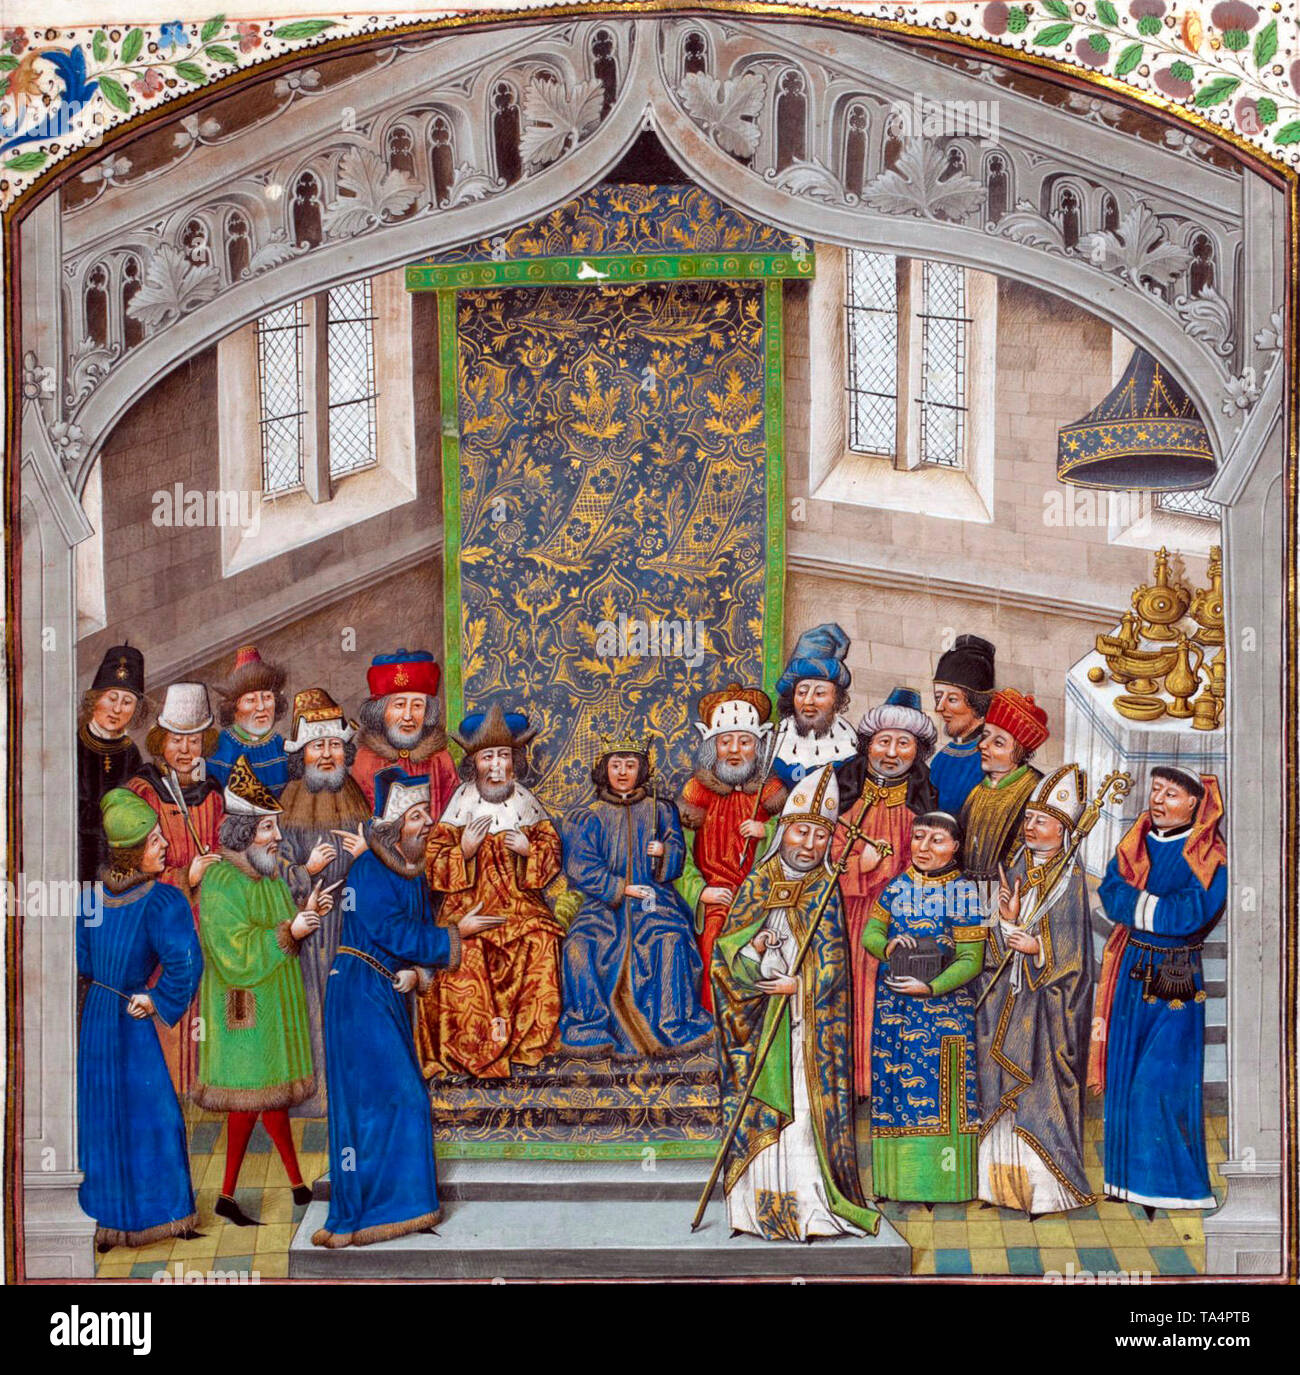 Le roi Richard II d'Angleterre avec sa cour après son couronnement. 15e siècle Banque D'Images